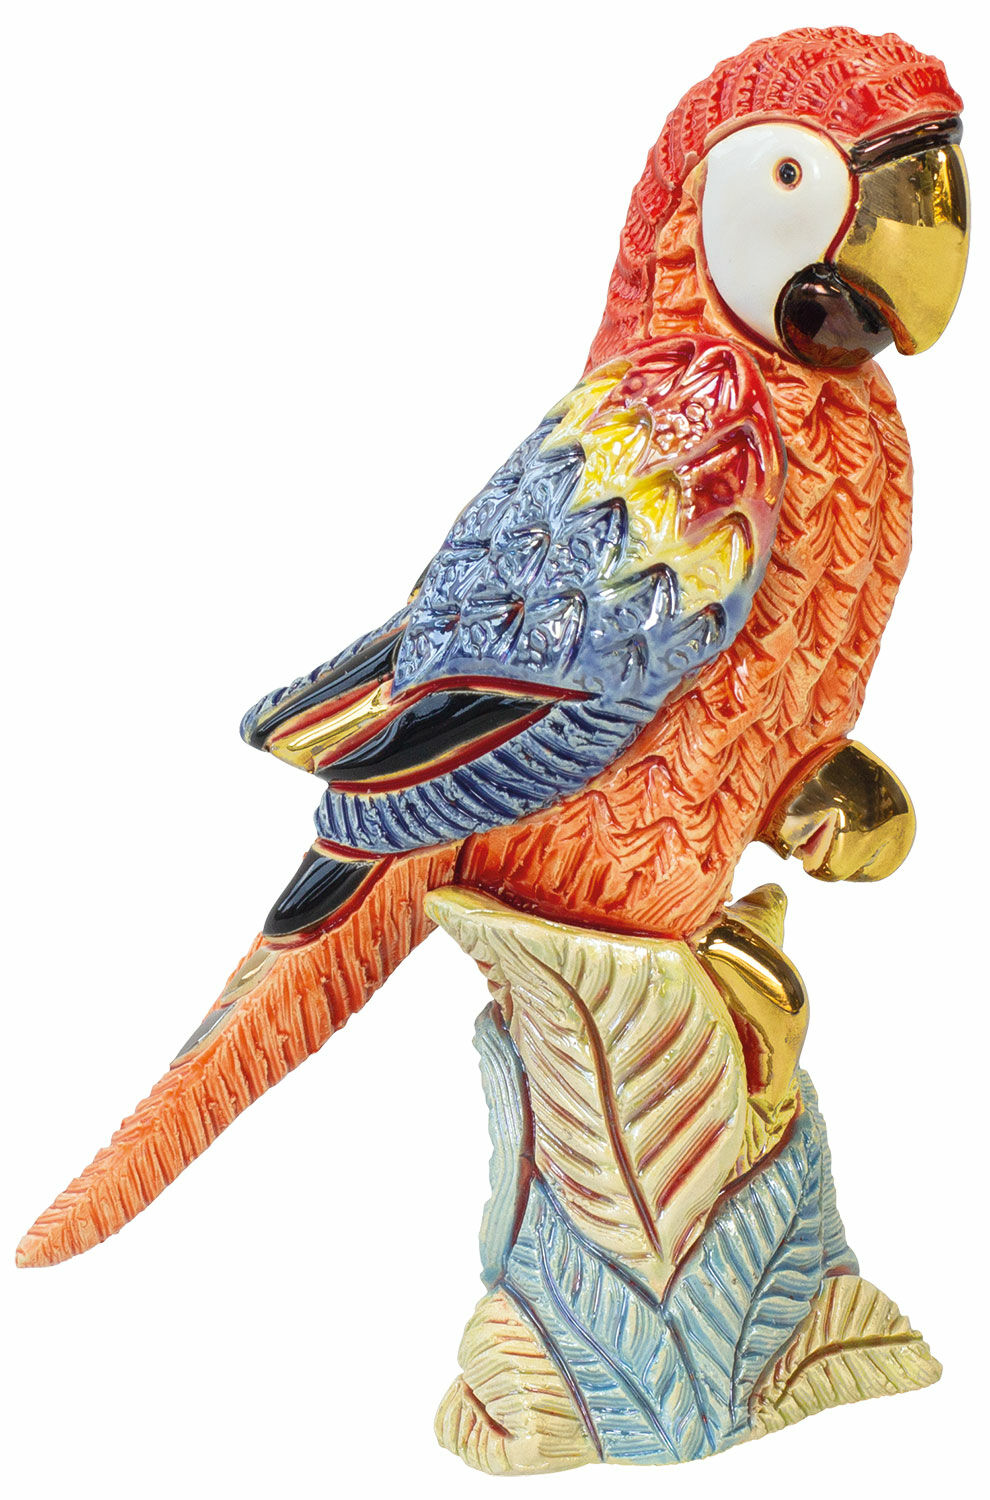 Ceramic figure "Red Parrot"